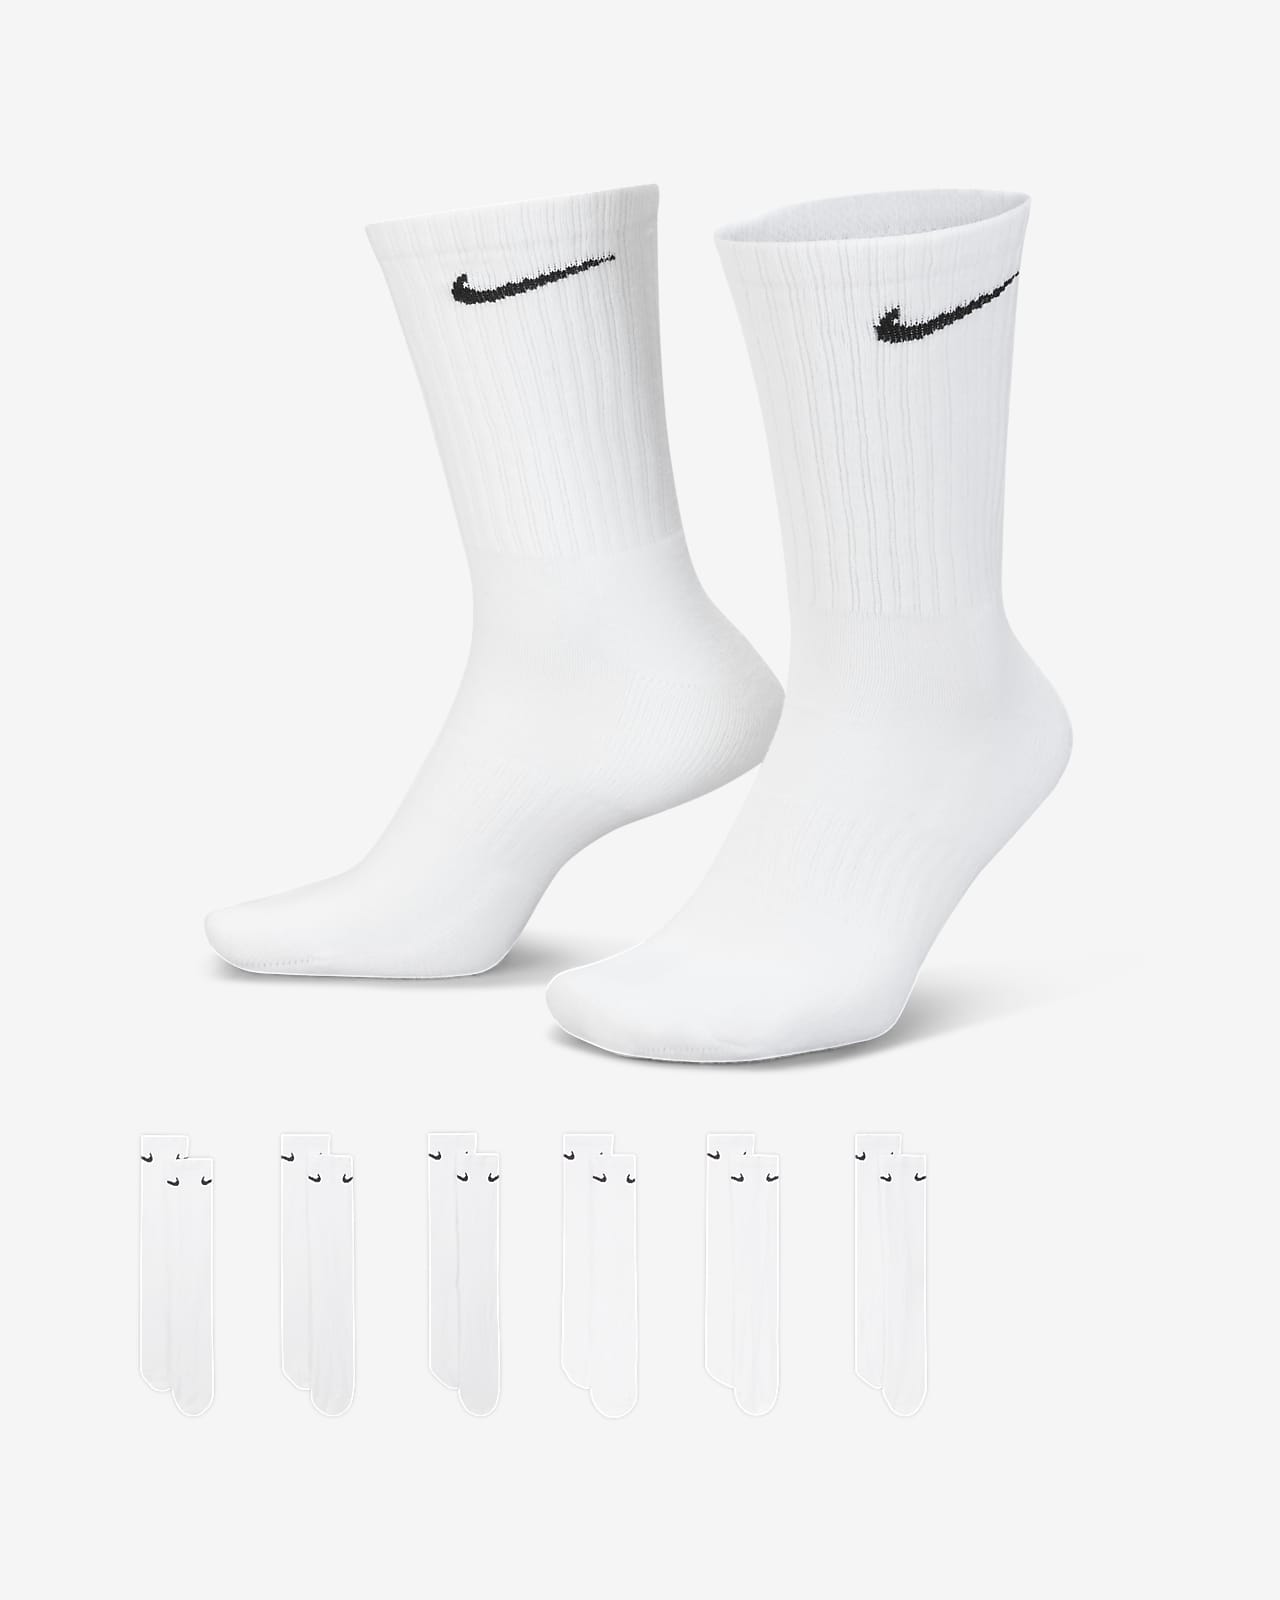 Calcetas de entrenamiento Nike Everyday Cushioned (6 pares)